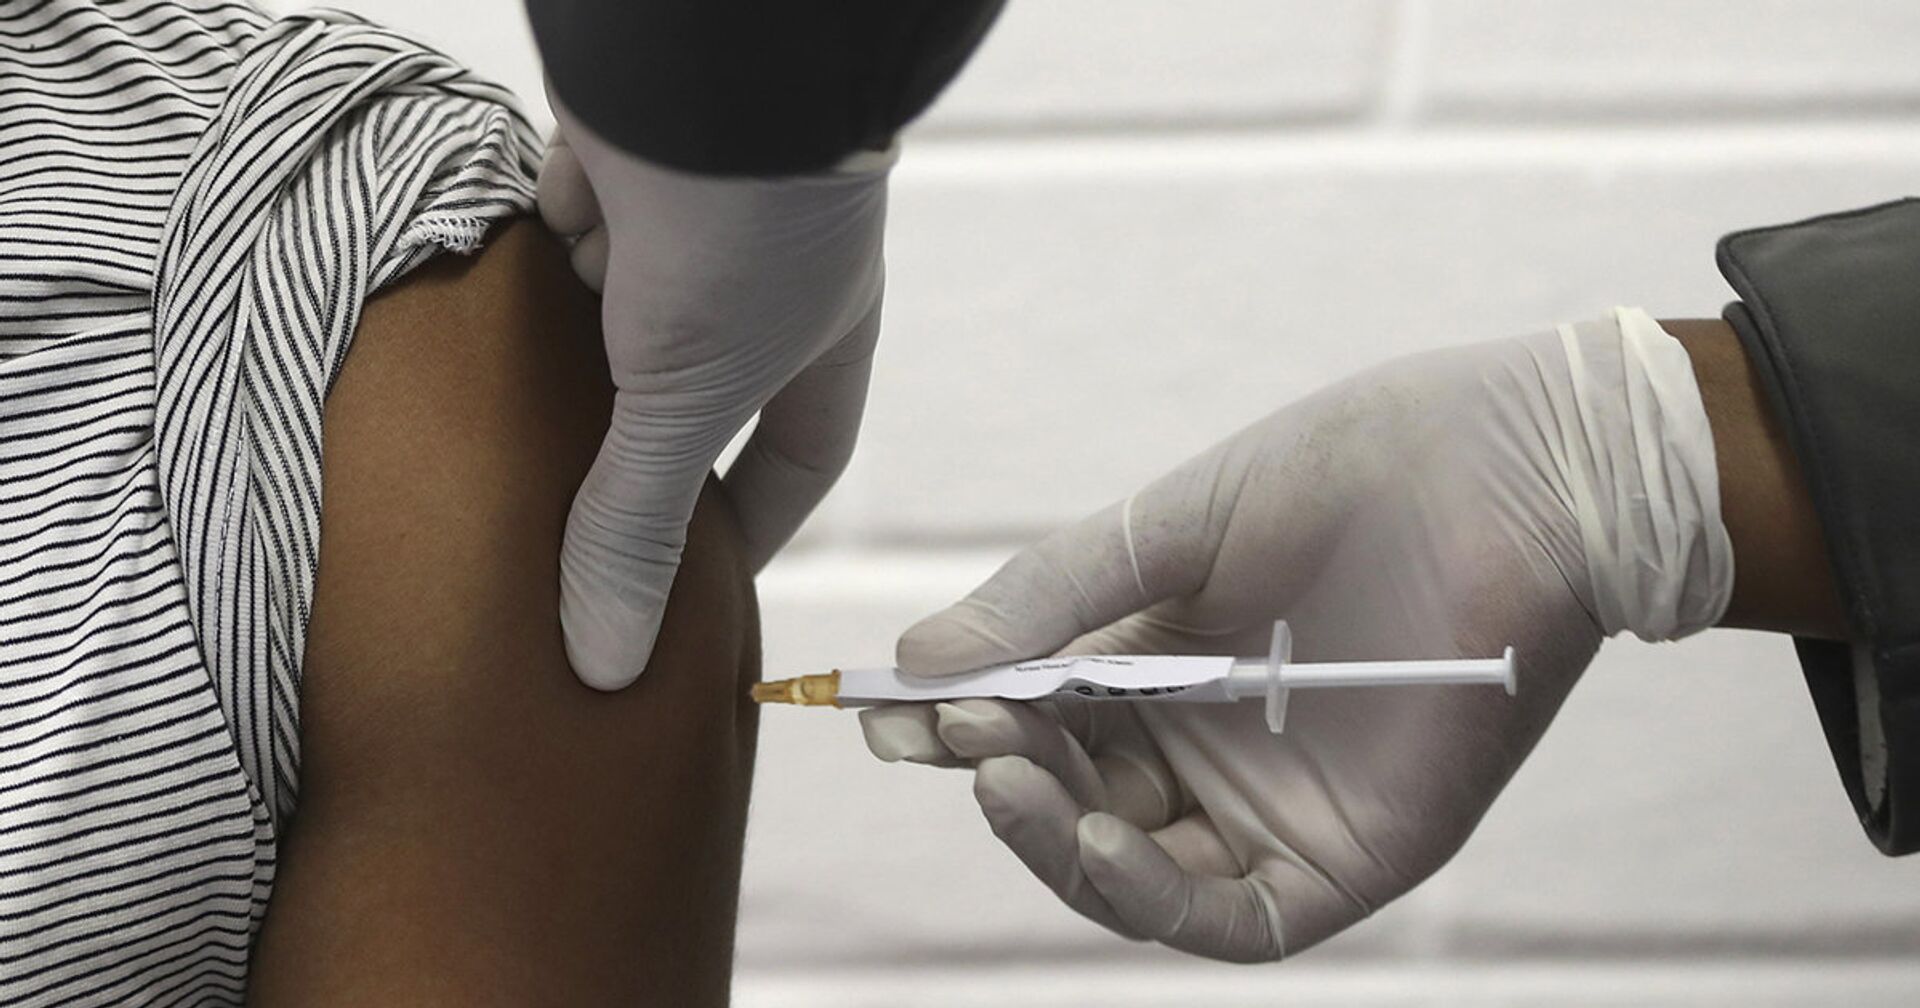 Доброволец получает вакцину от коронавируса в Йоханнесбурге - ИноСМИ, 1920, 17.03.2021